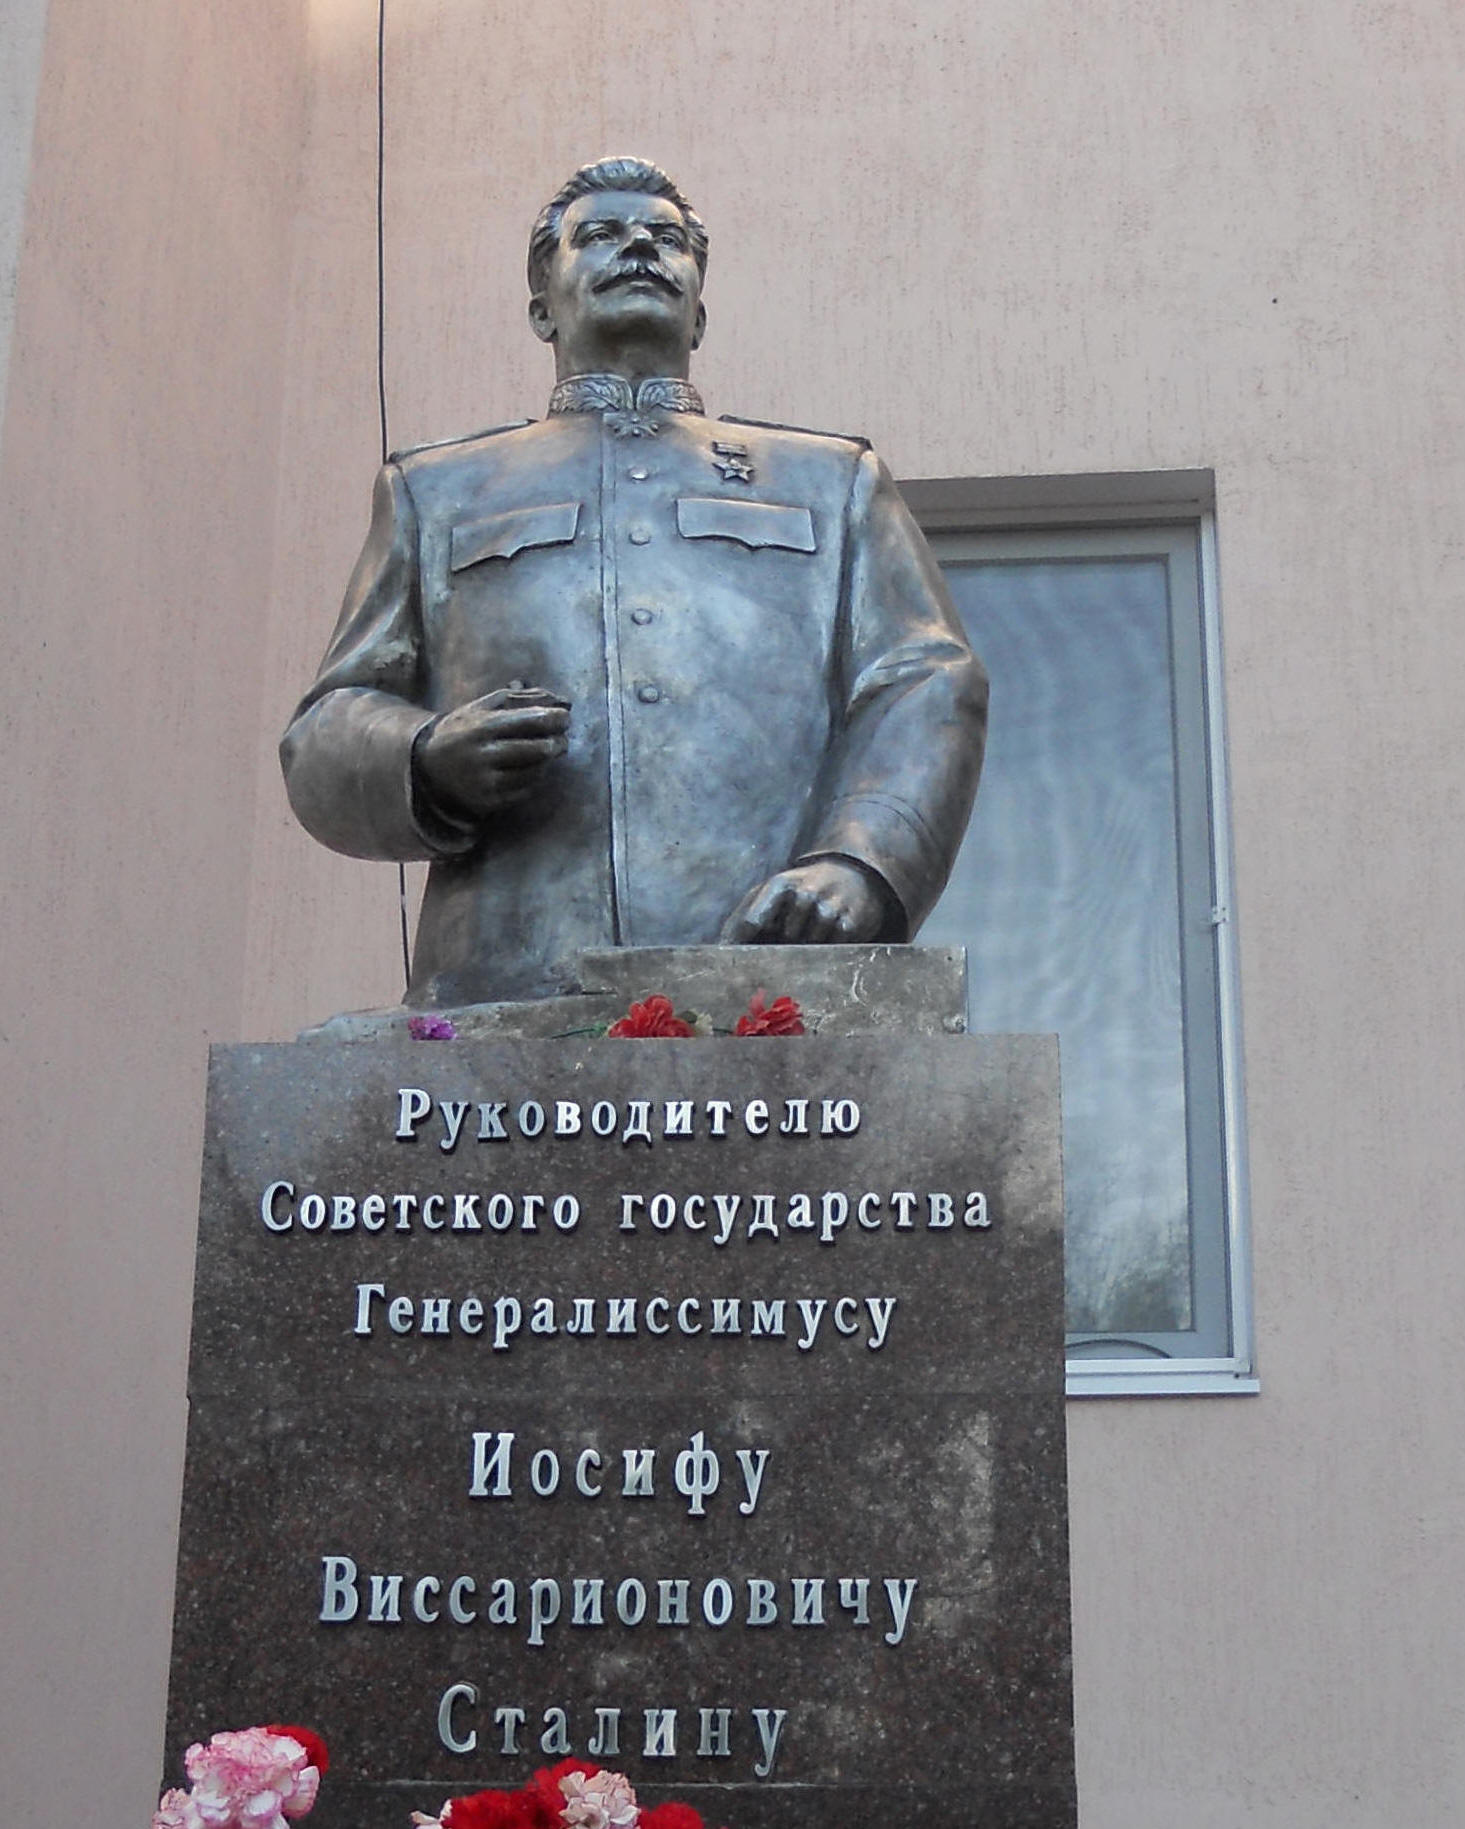 Памятник Сталину. Сайт досье Изюмова Юрия